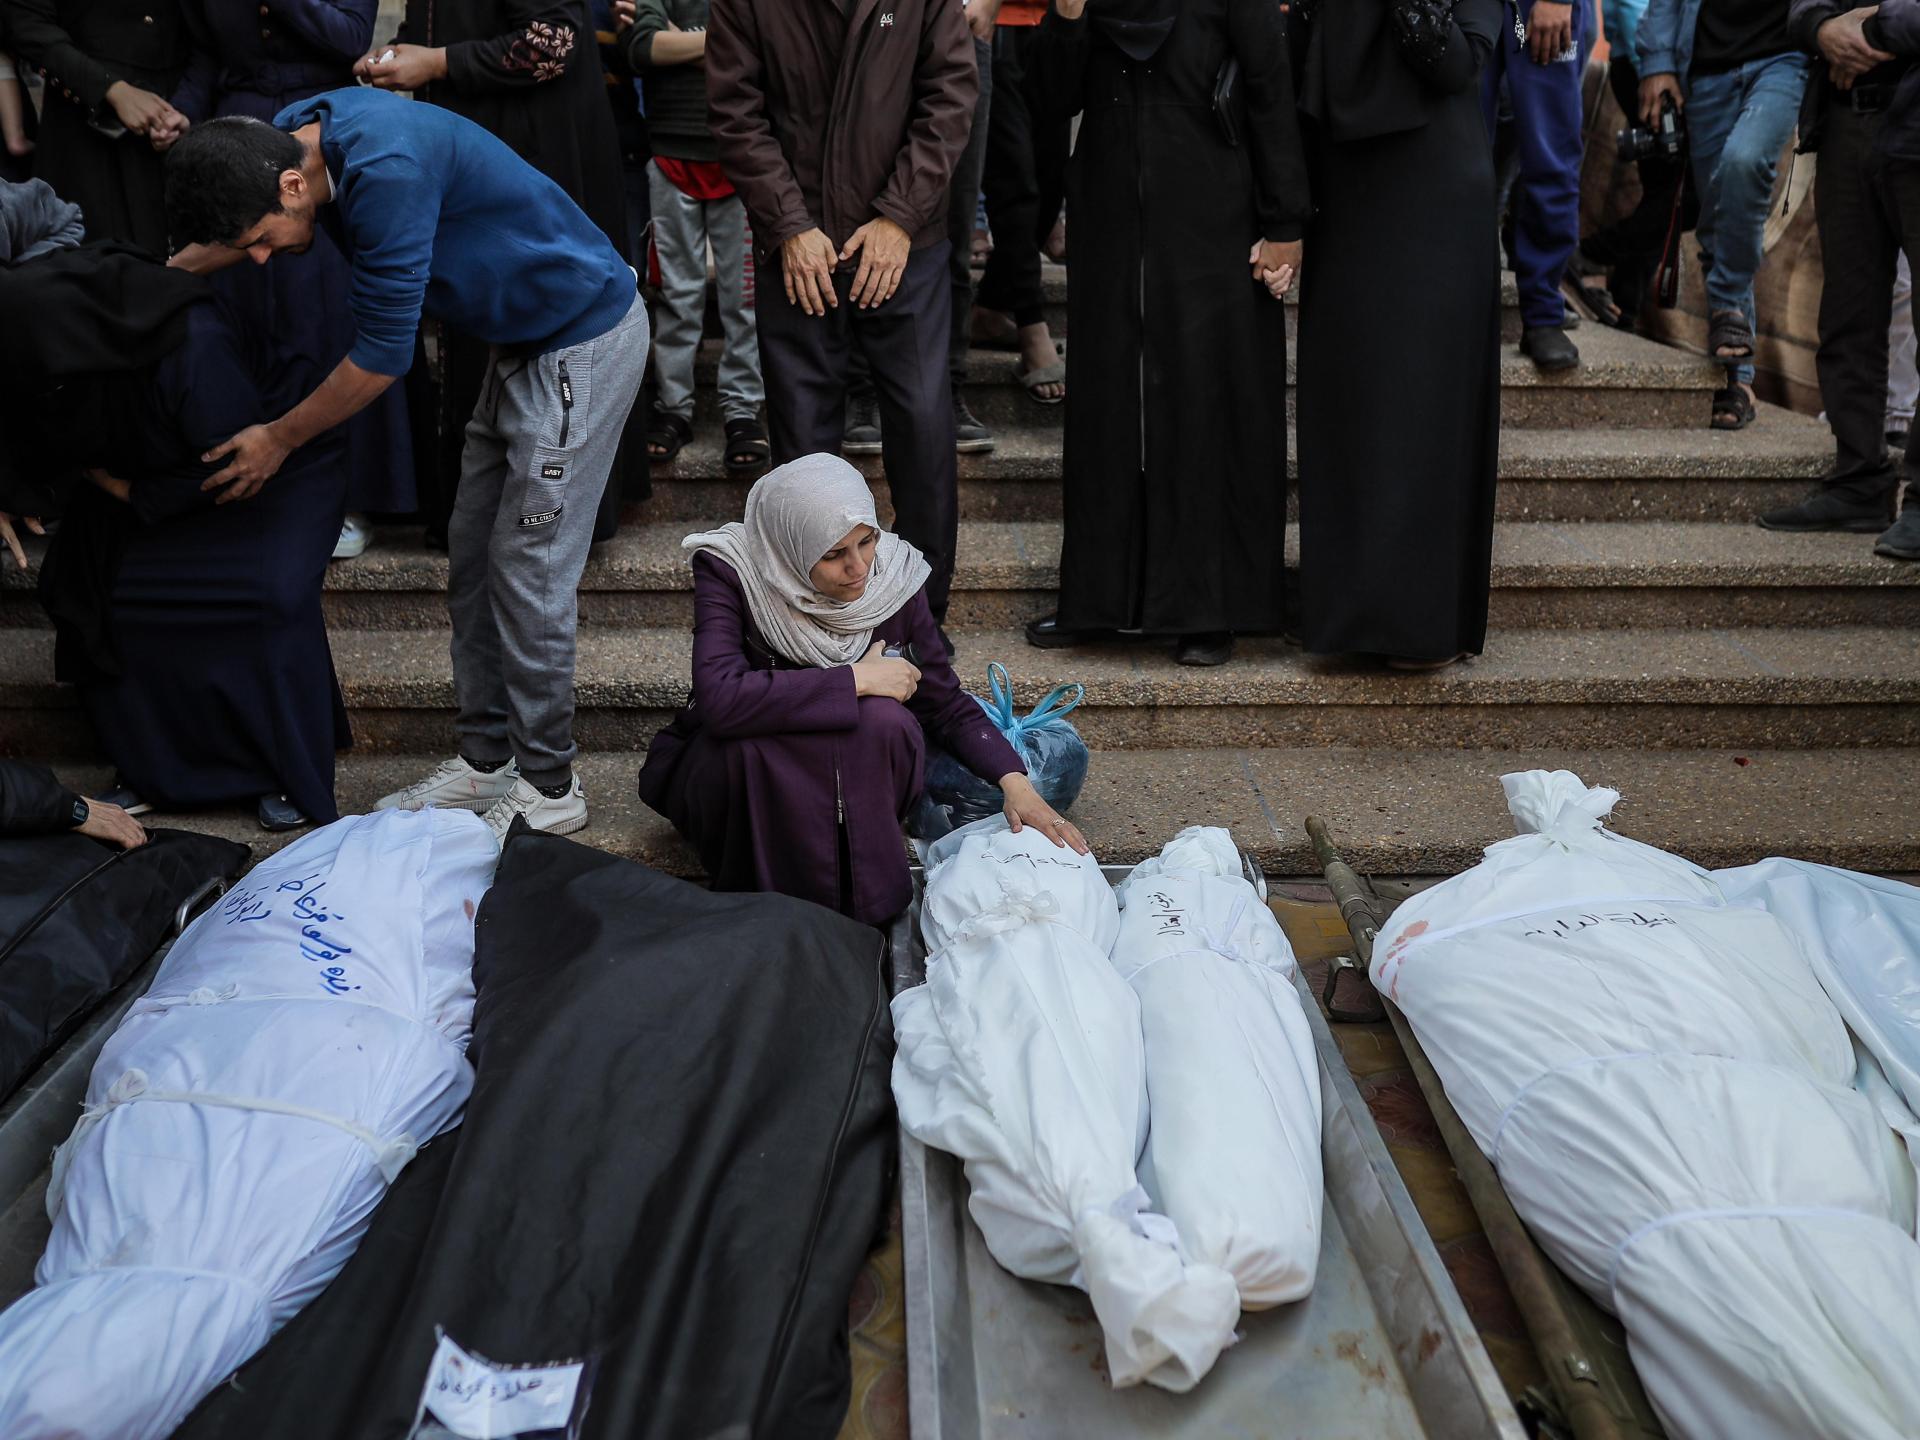 حكومة غزة تتهم إسرائيل بسرقة أعضاء من جثامين شهداء وتدعو لتحقيق دولي | أخبار – البوكس نيوز